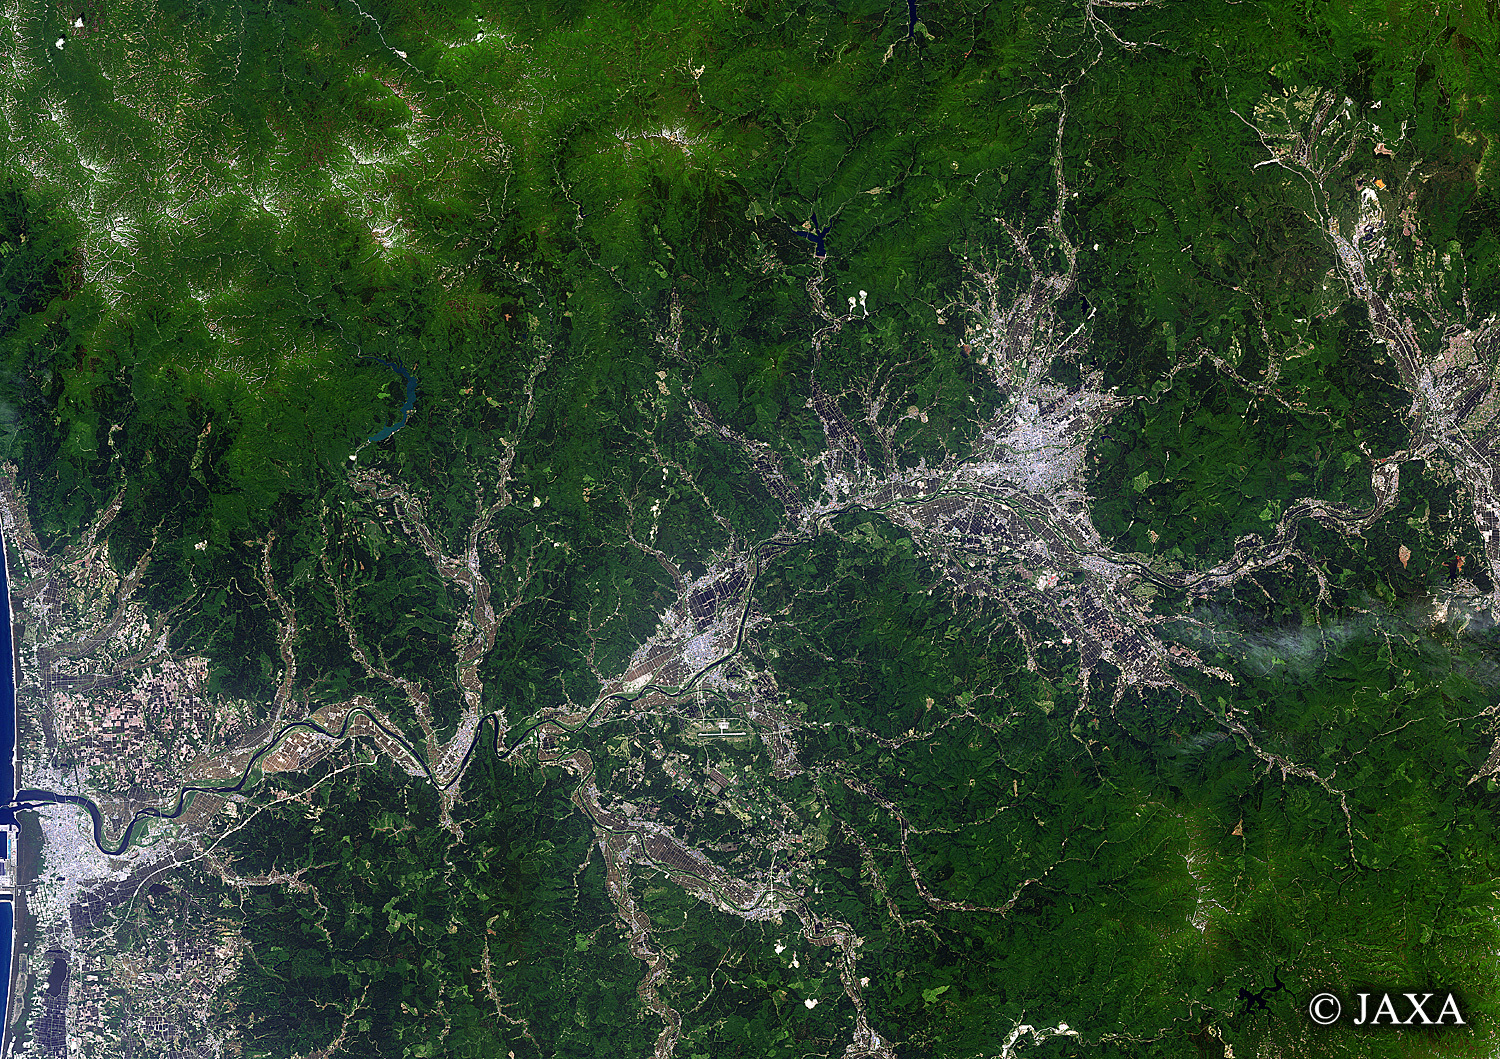 だいちから見た日本の都市 秋田市:衛星画像